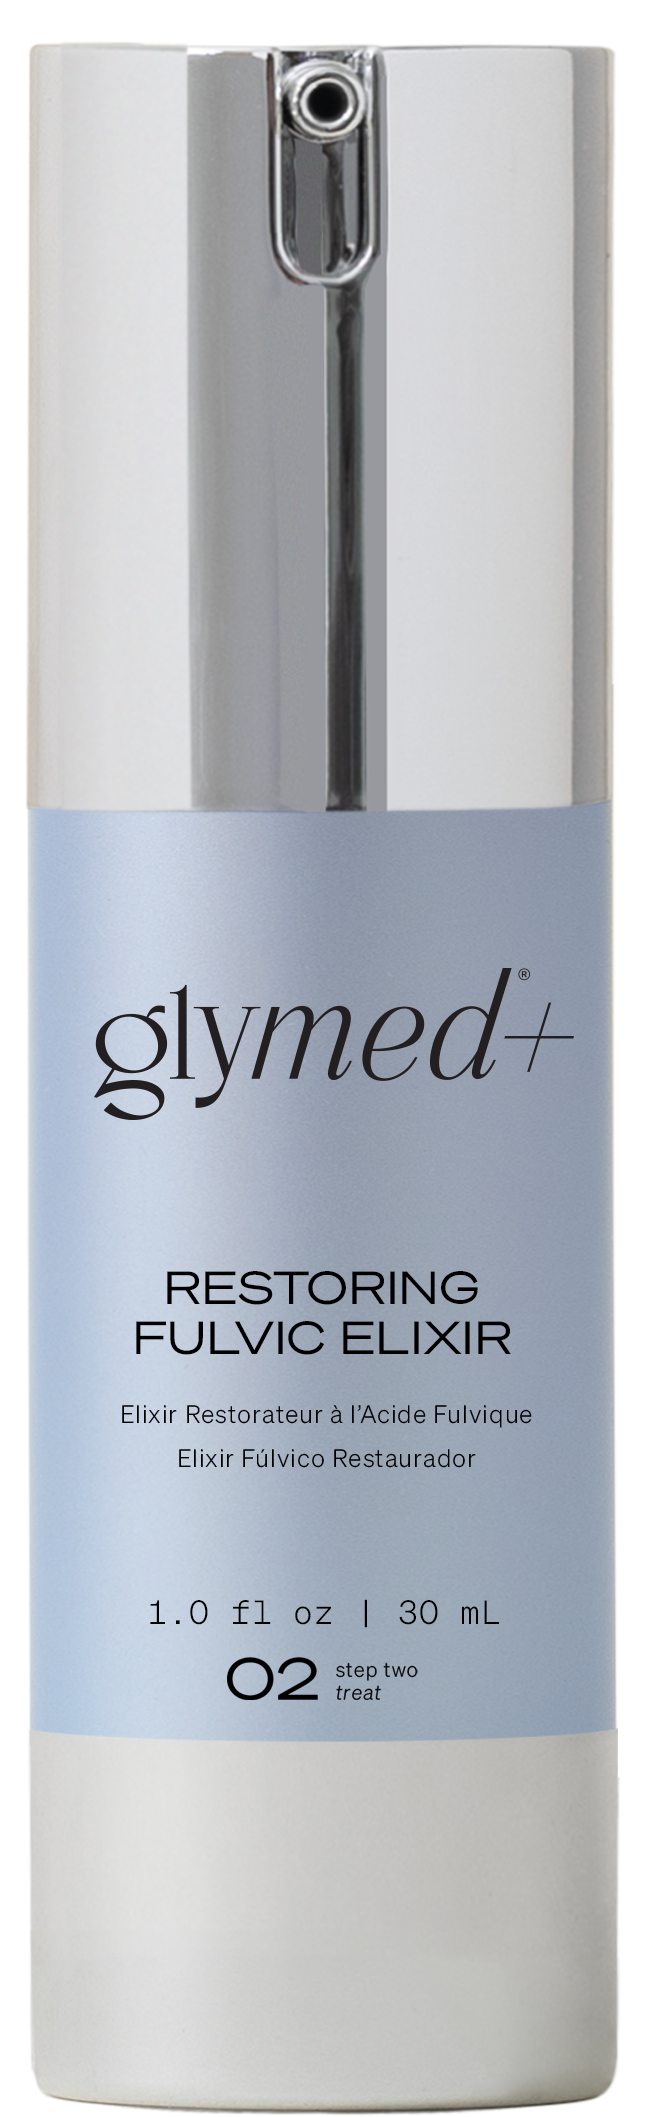 Restoring Fulvic Elixir